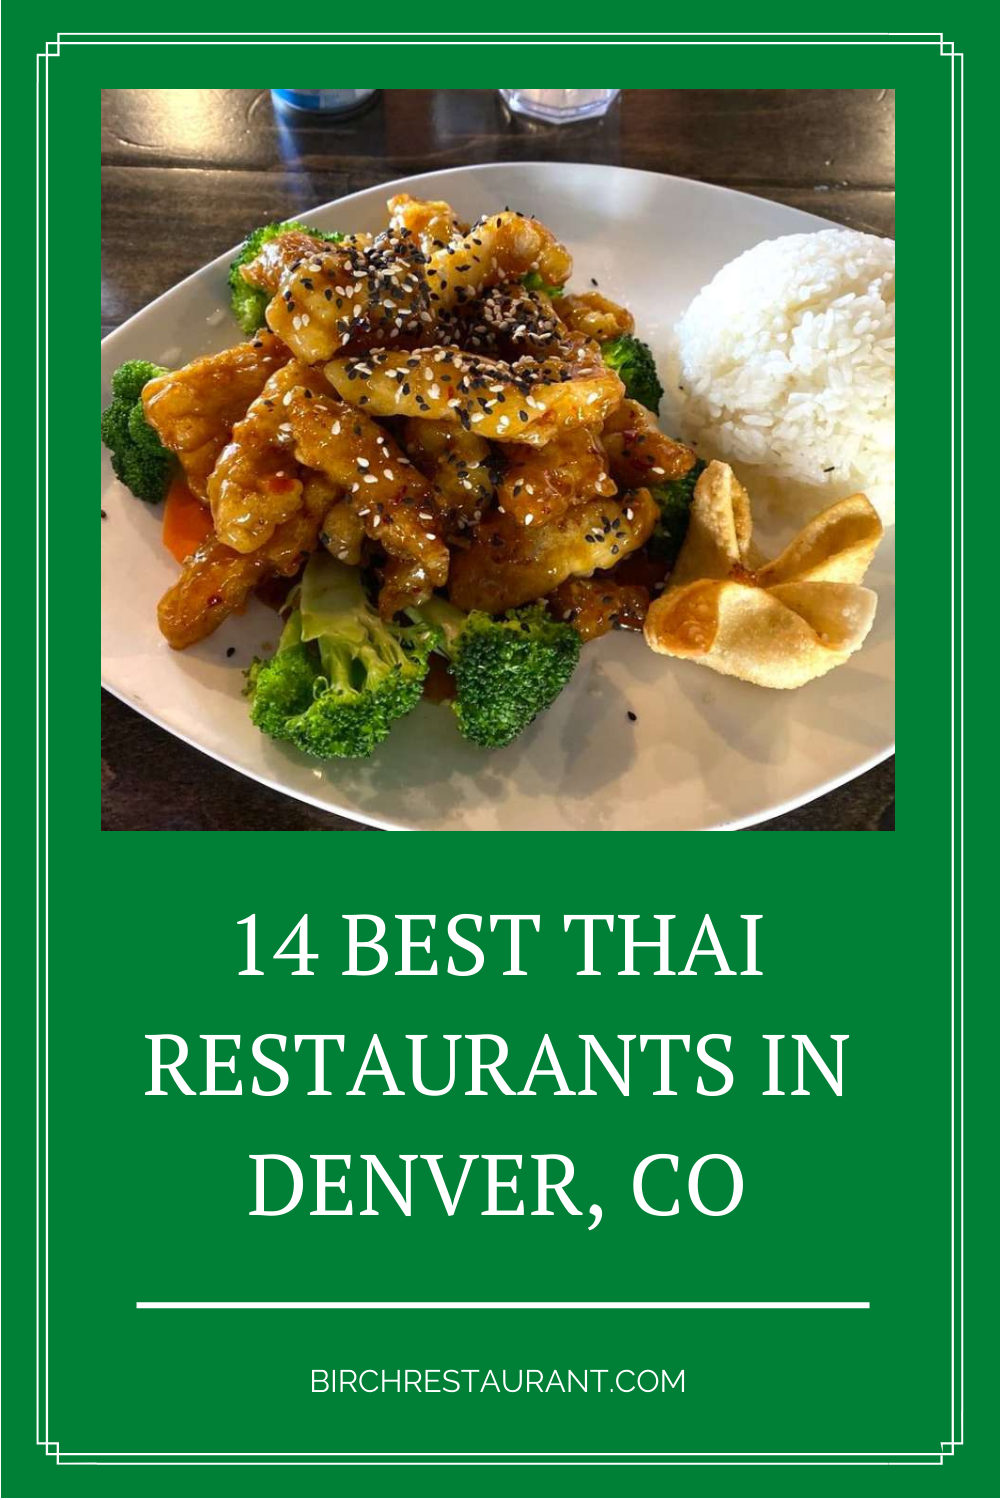 Thai Restaurant in Denver, CO